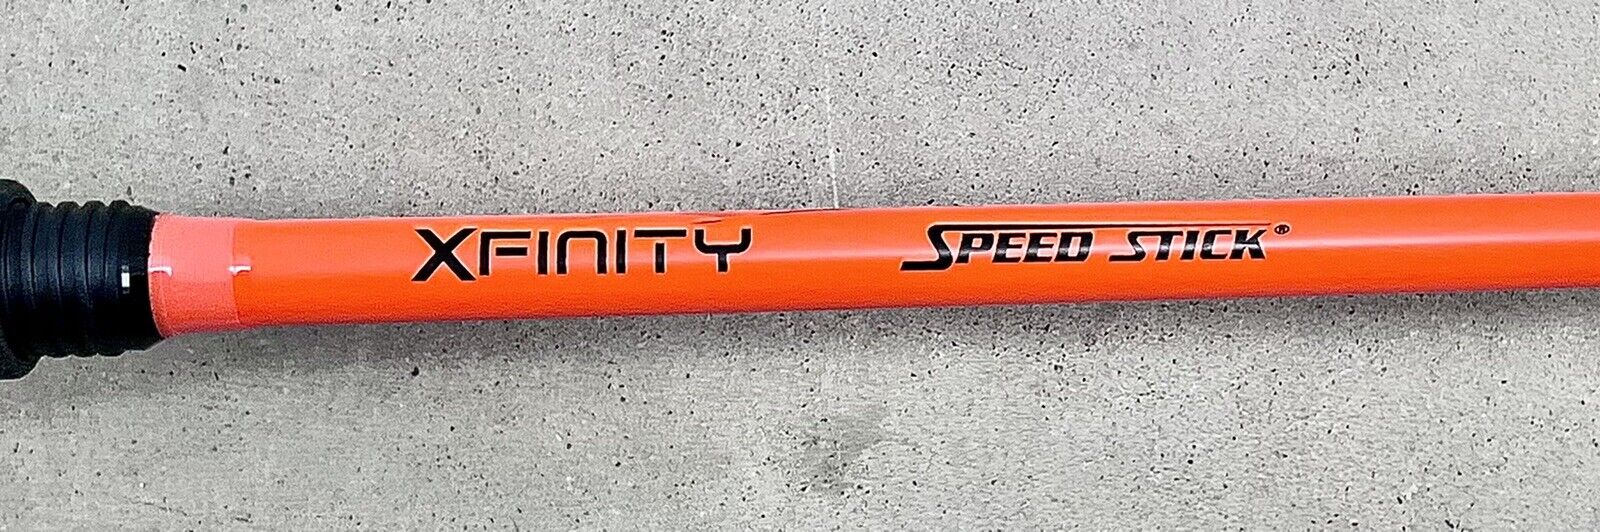 xfinity stick im-7 xf1sha610mh-d varilla naranja